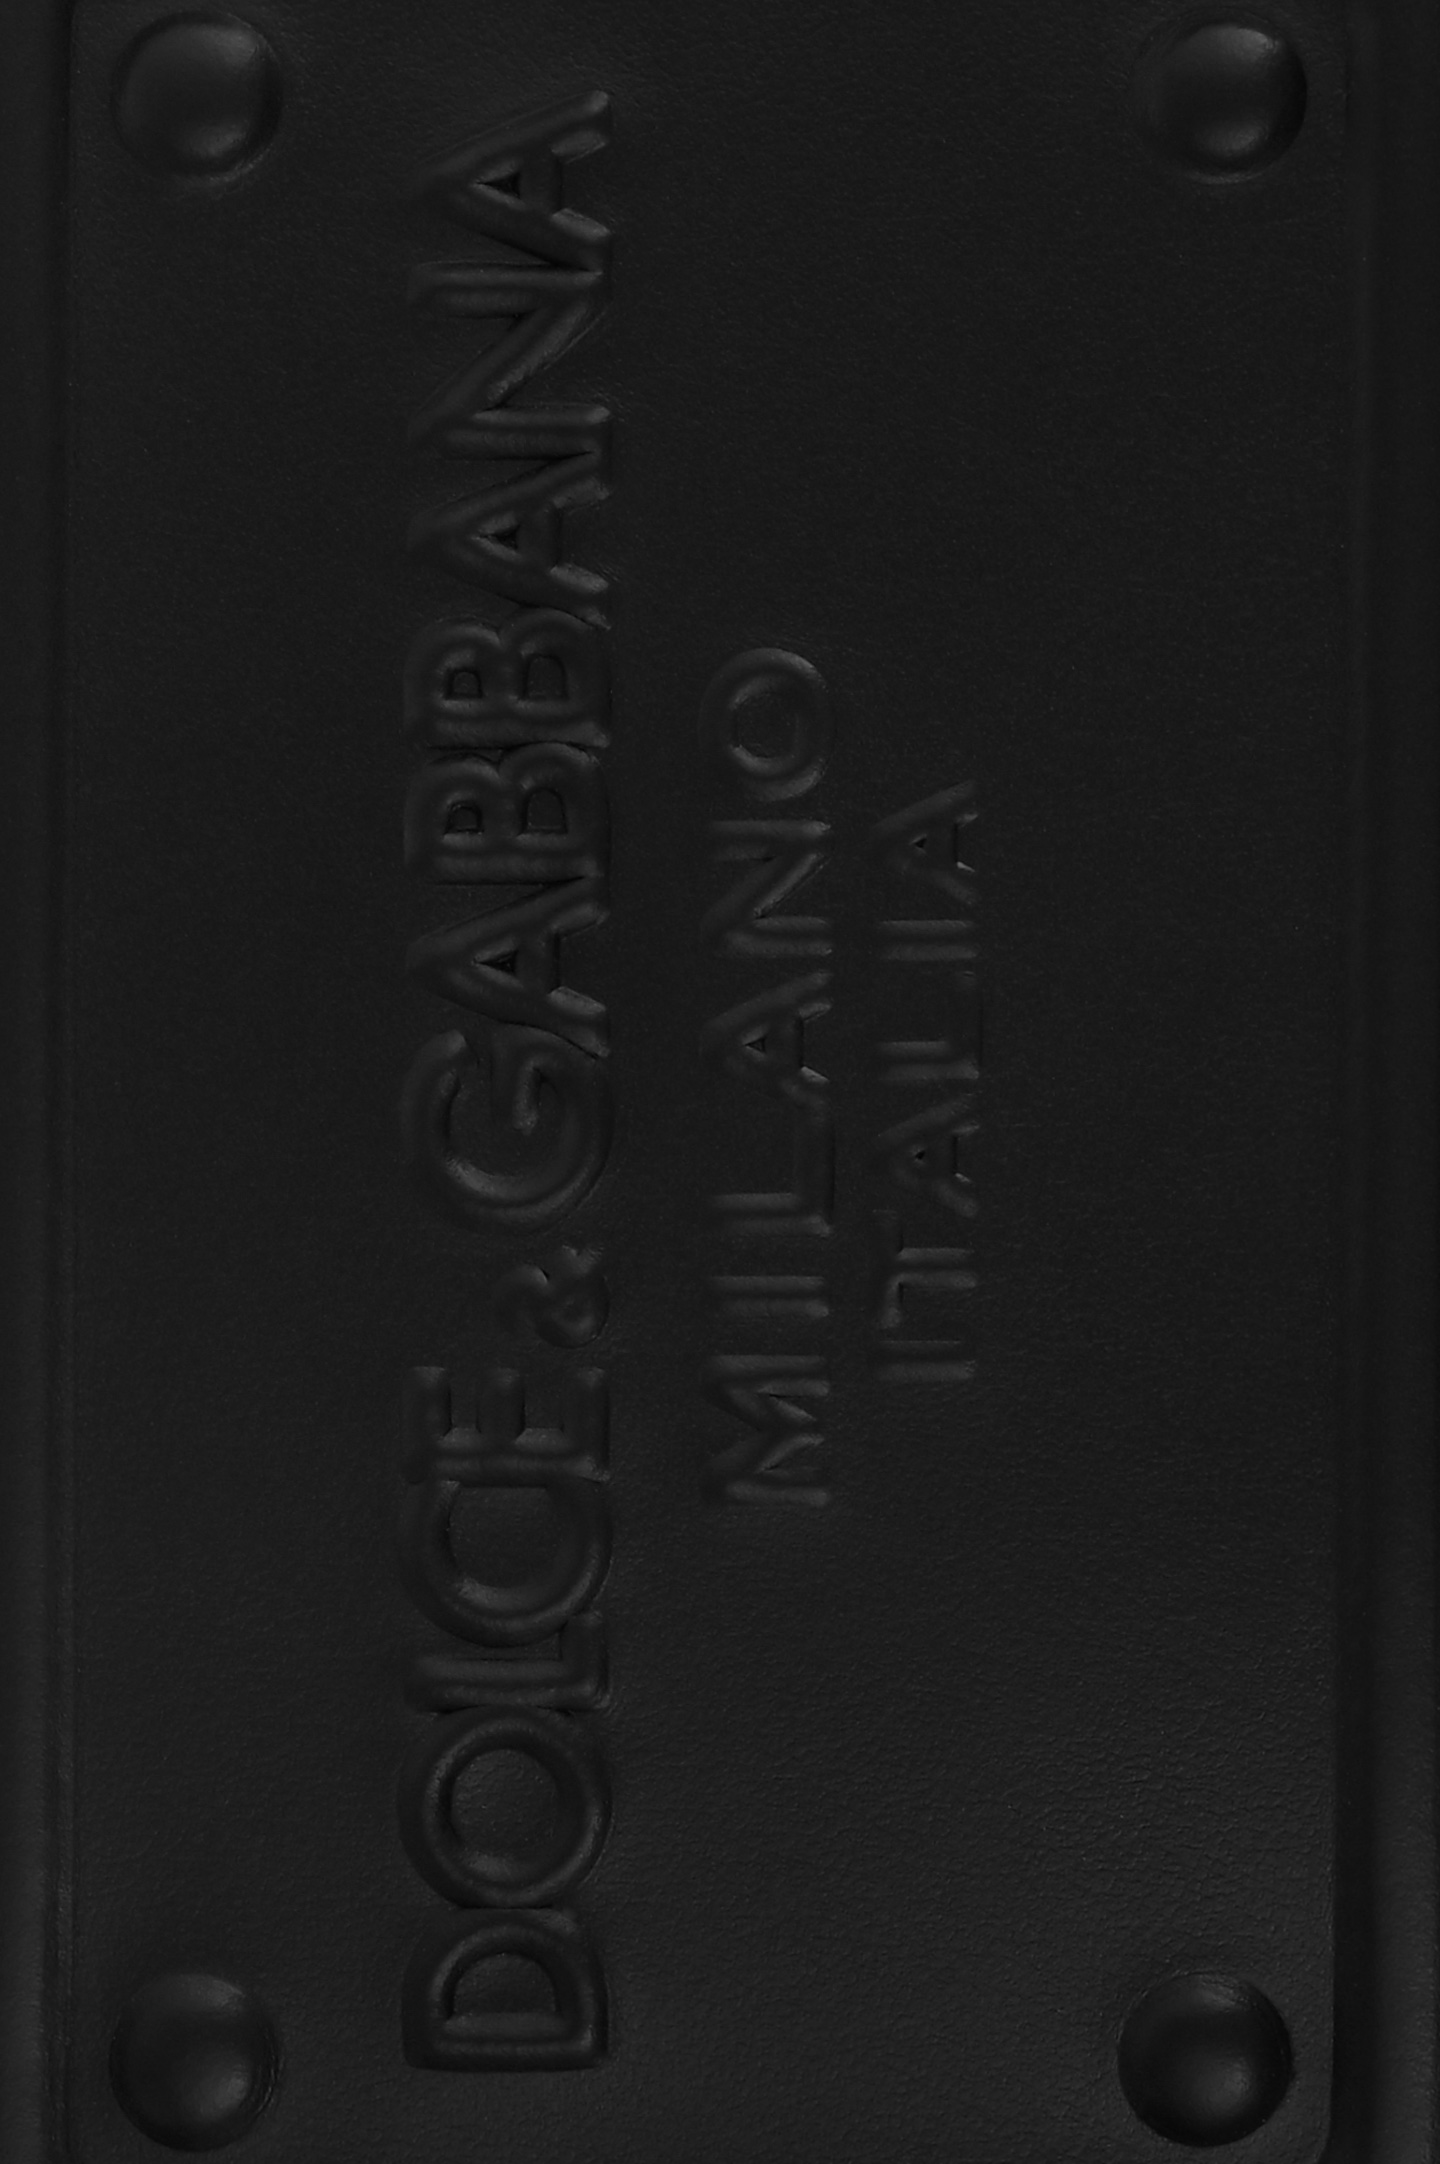 Обложка для паспорта DOLCE & GABBANA BP2215 AG218, цвет: Черный, Мужской